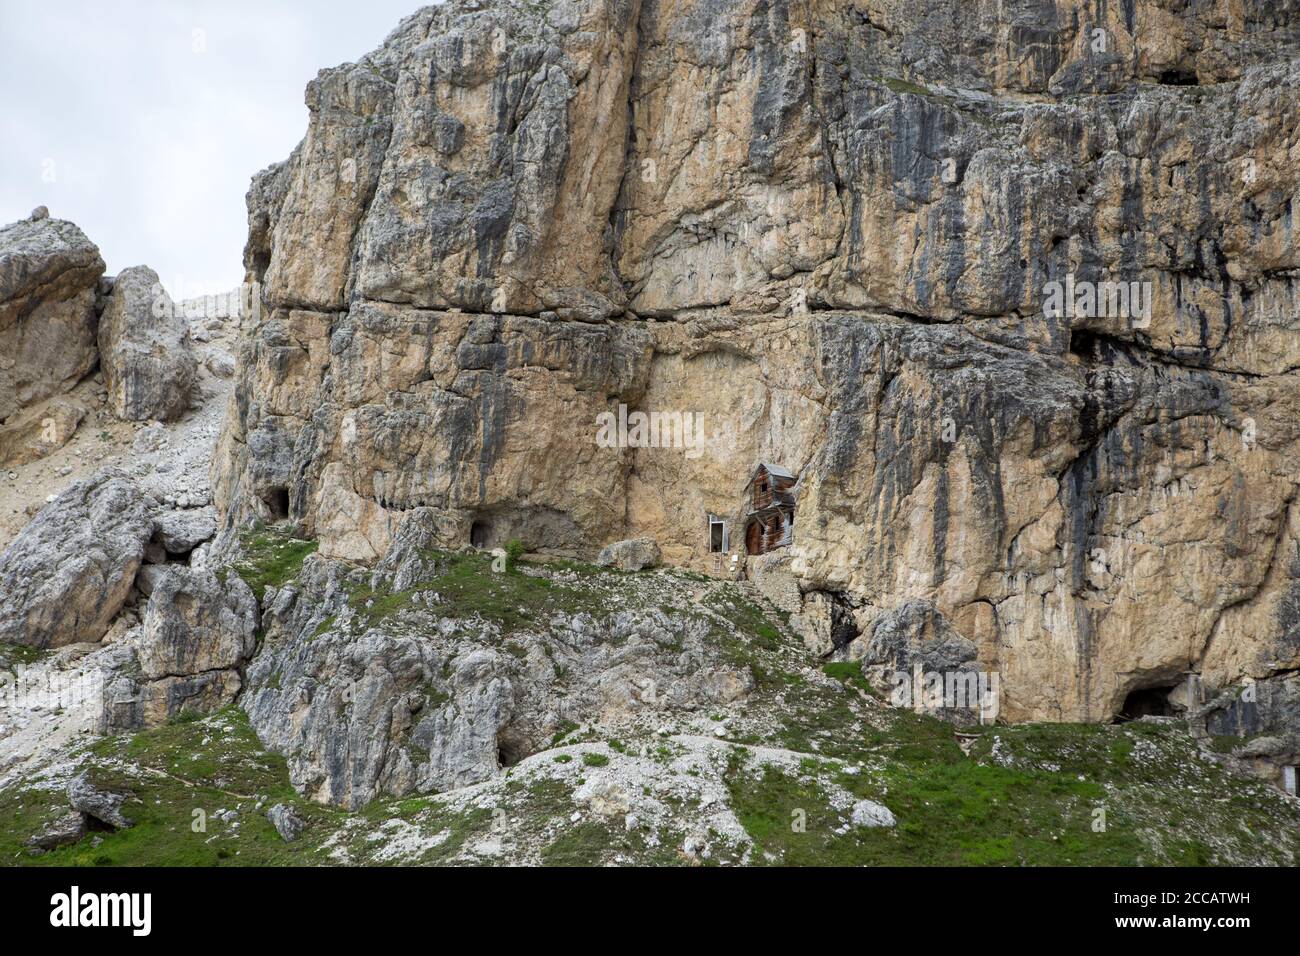 Le 1915, une unité de troupe d'Alpini a occupé la corniche à mi-hauteur de la face rocheuse du Piccolo Lagazuoi, une large étape rocheuse qui traverse la montagne Banque D'Images